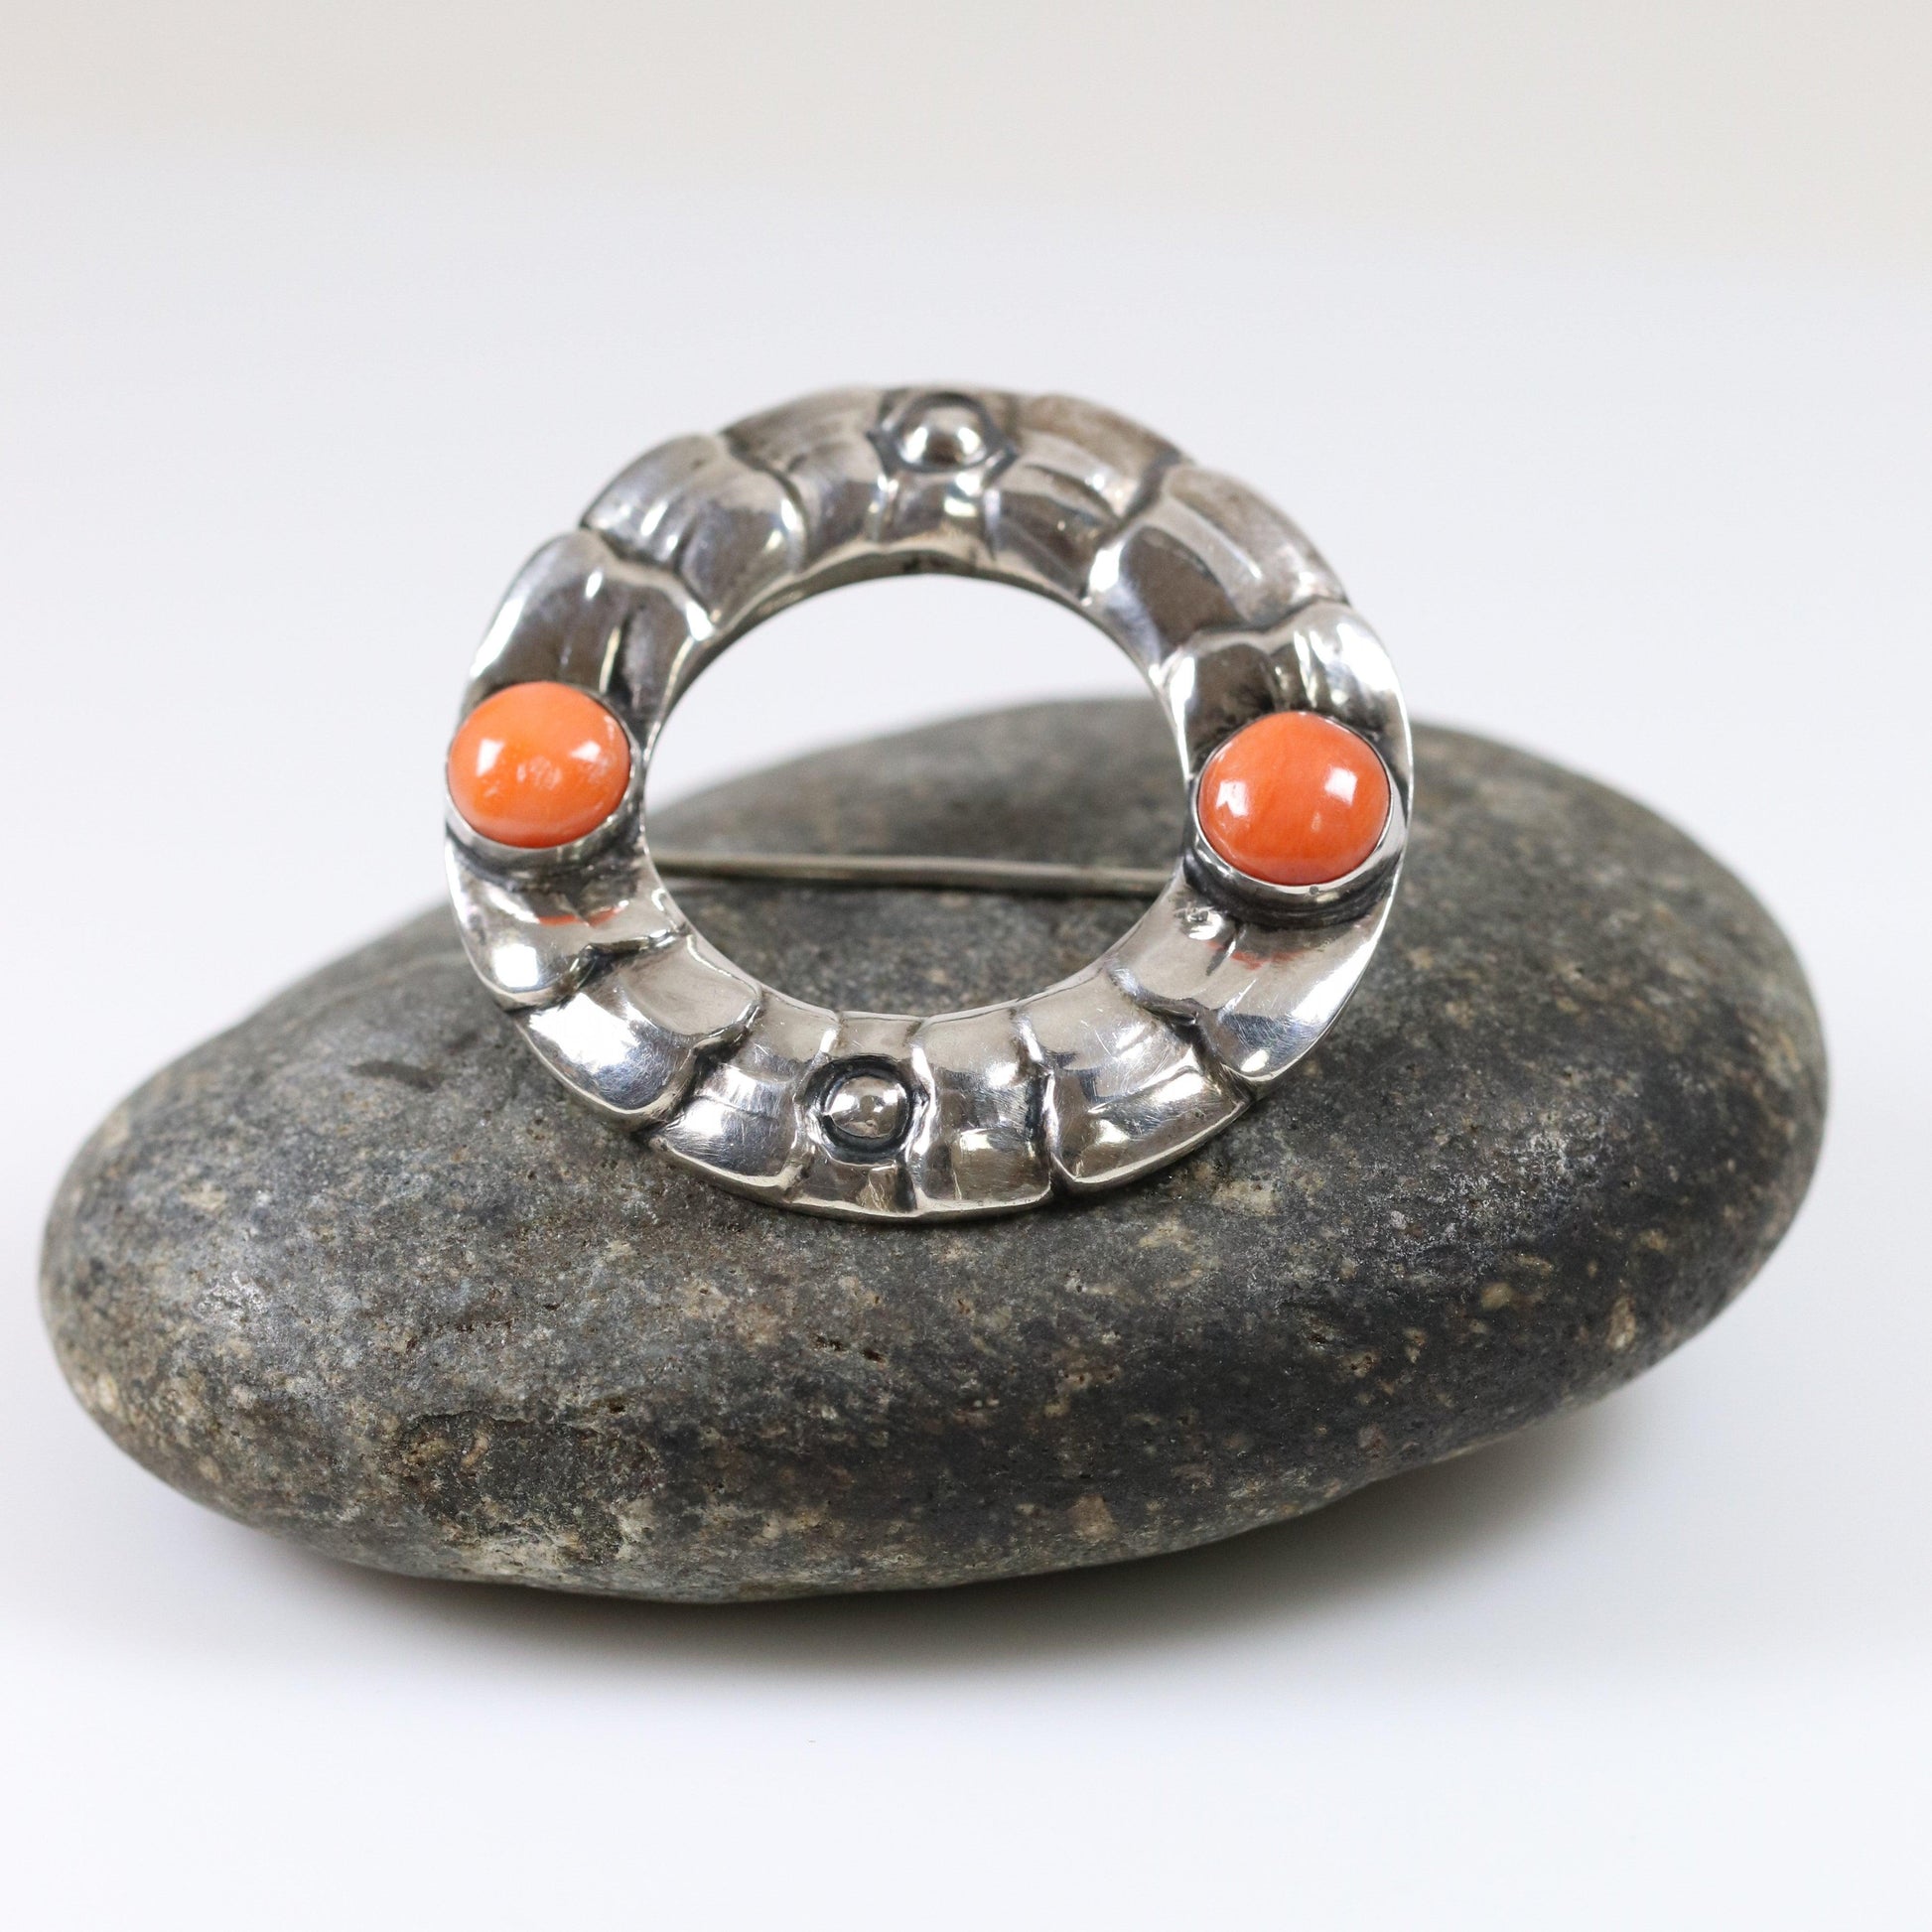 Georg Jensen Jewelry | Coral Art Nouveau Silver Vintage Brooch 49 - Carmel Fine Silver Jewelry